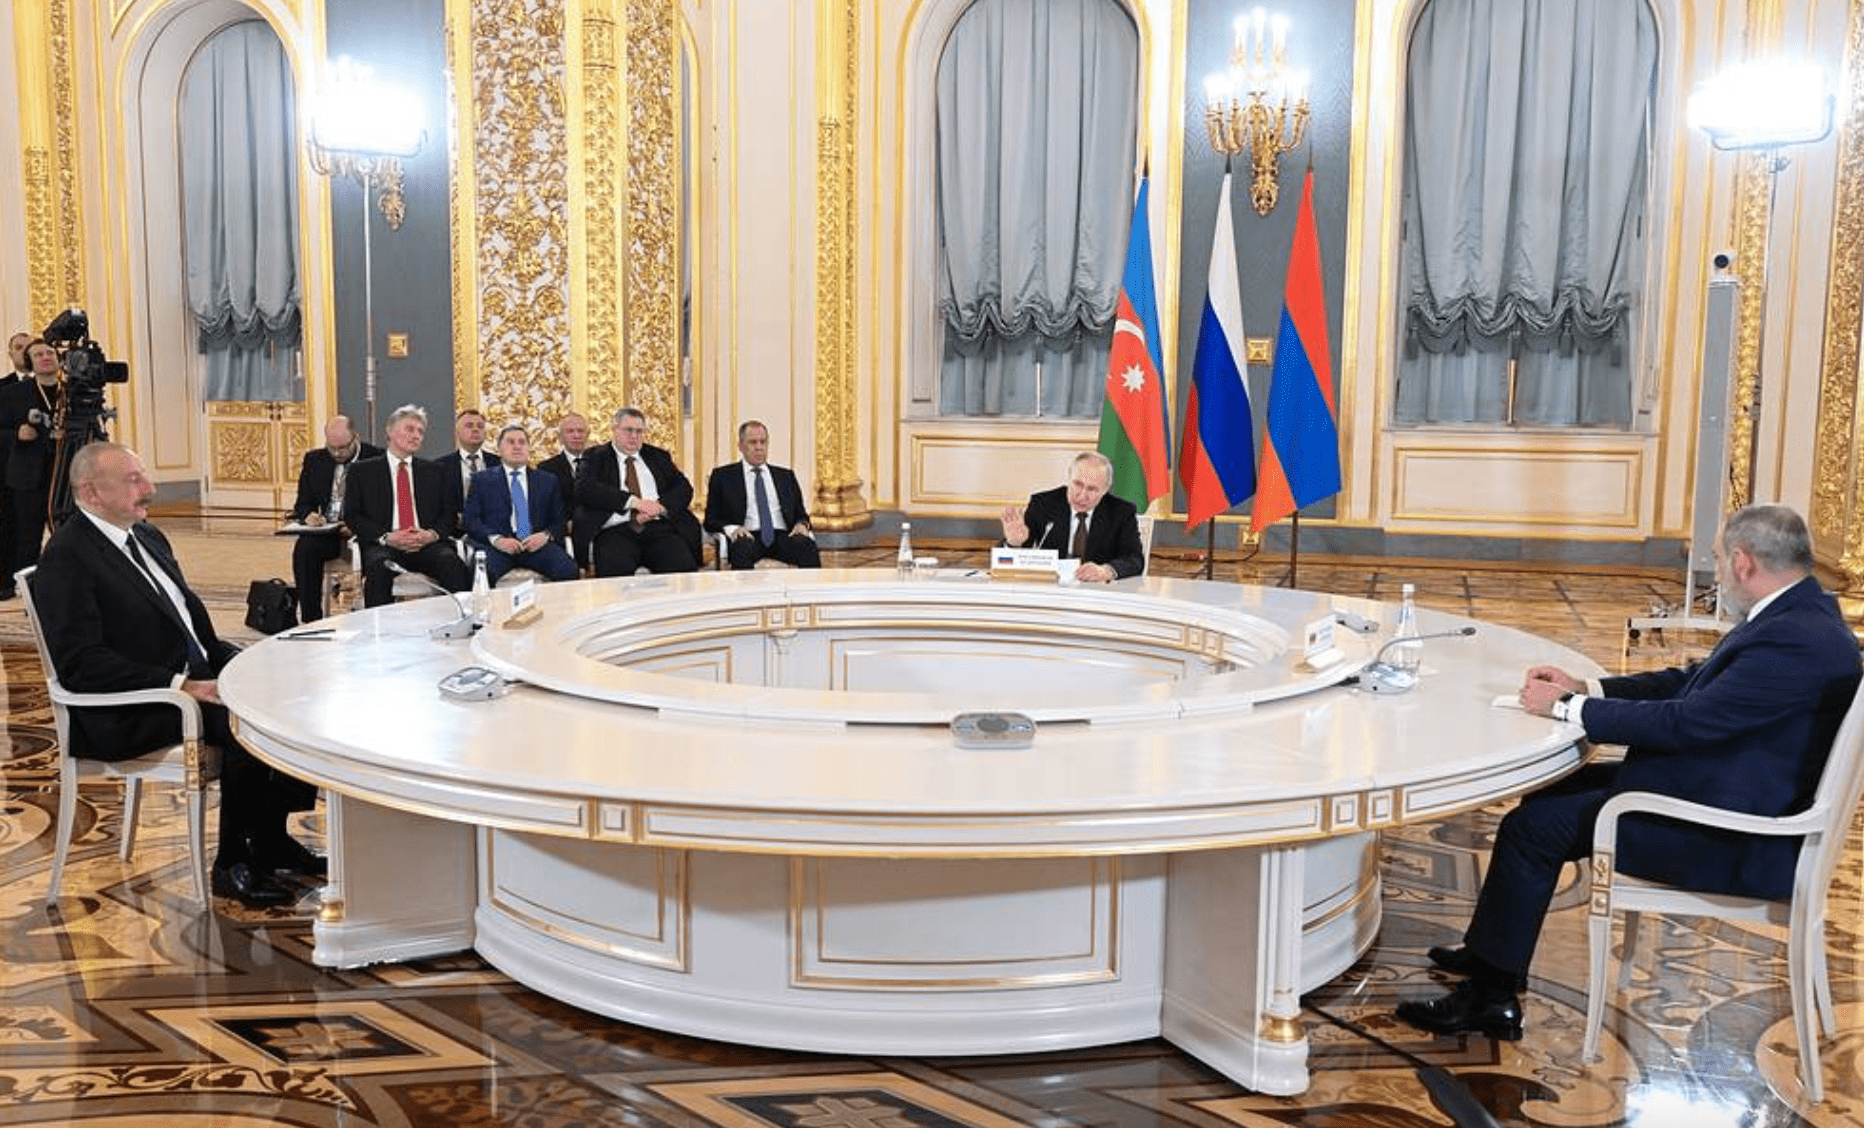 Mosca convoca l'ambasciatore armeno e critica i 'passi ostili' di Erevan